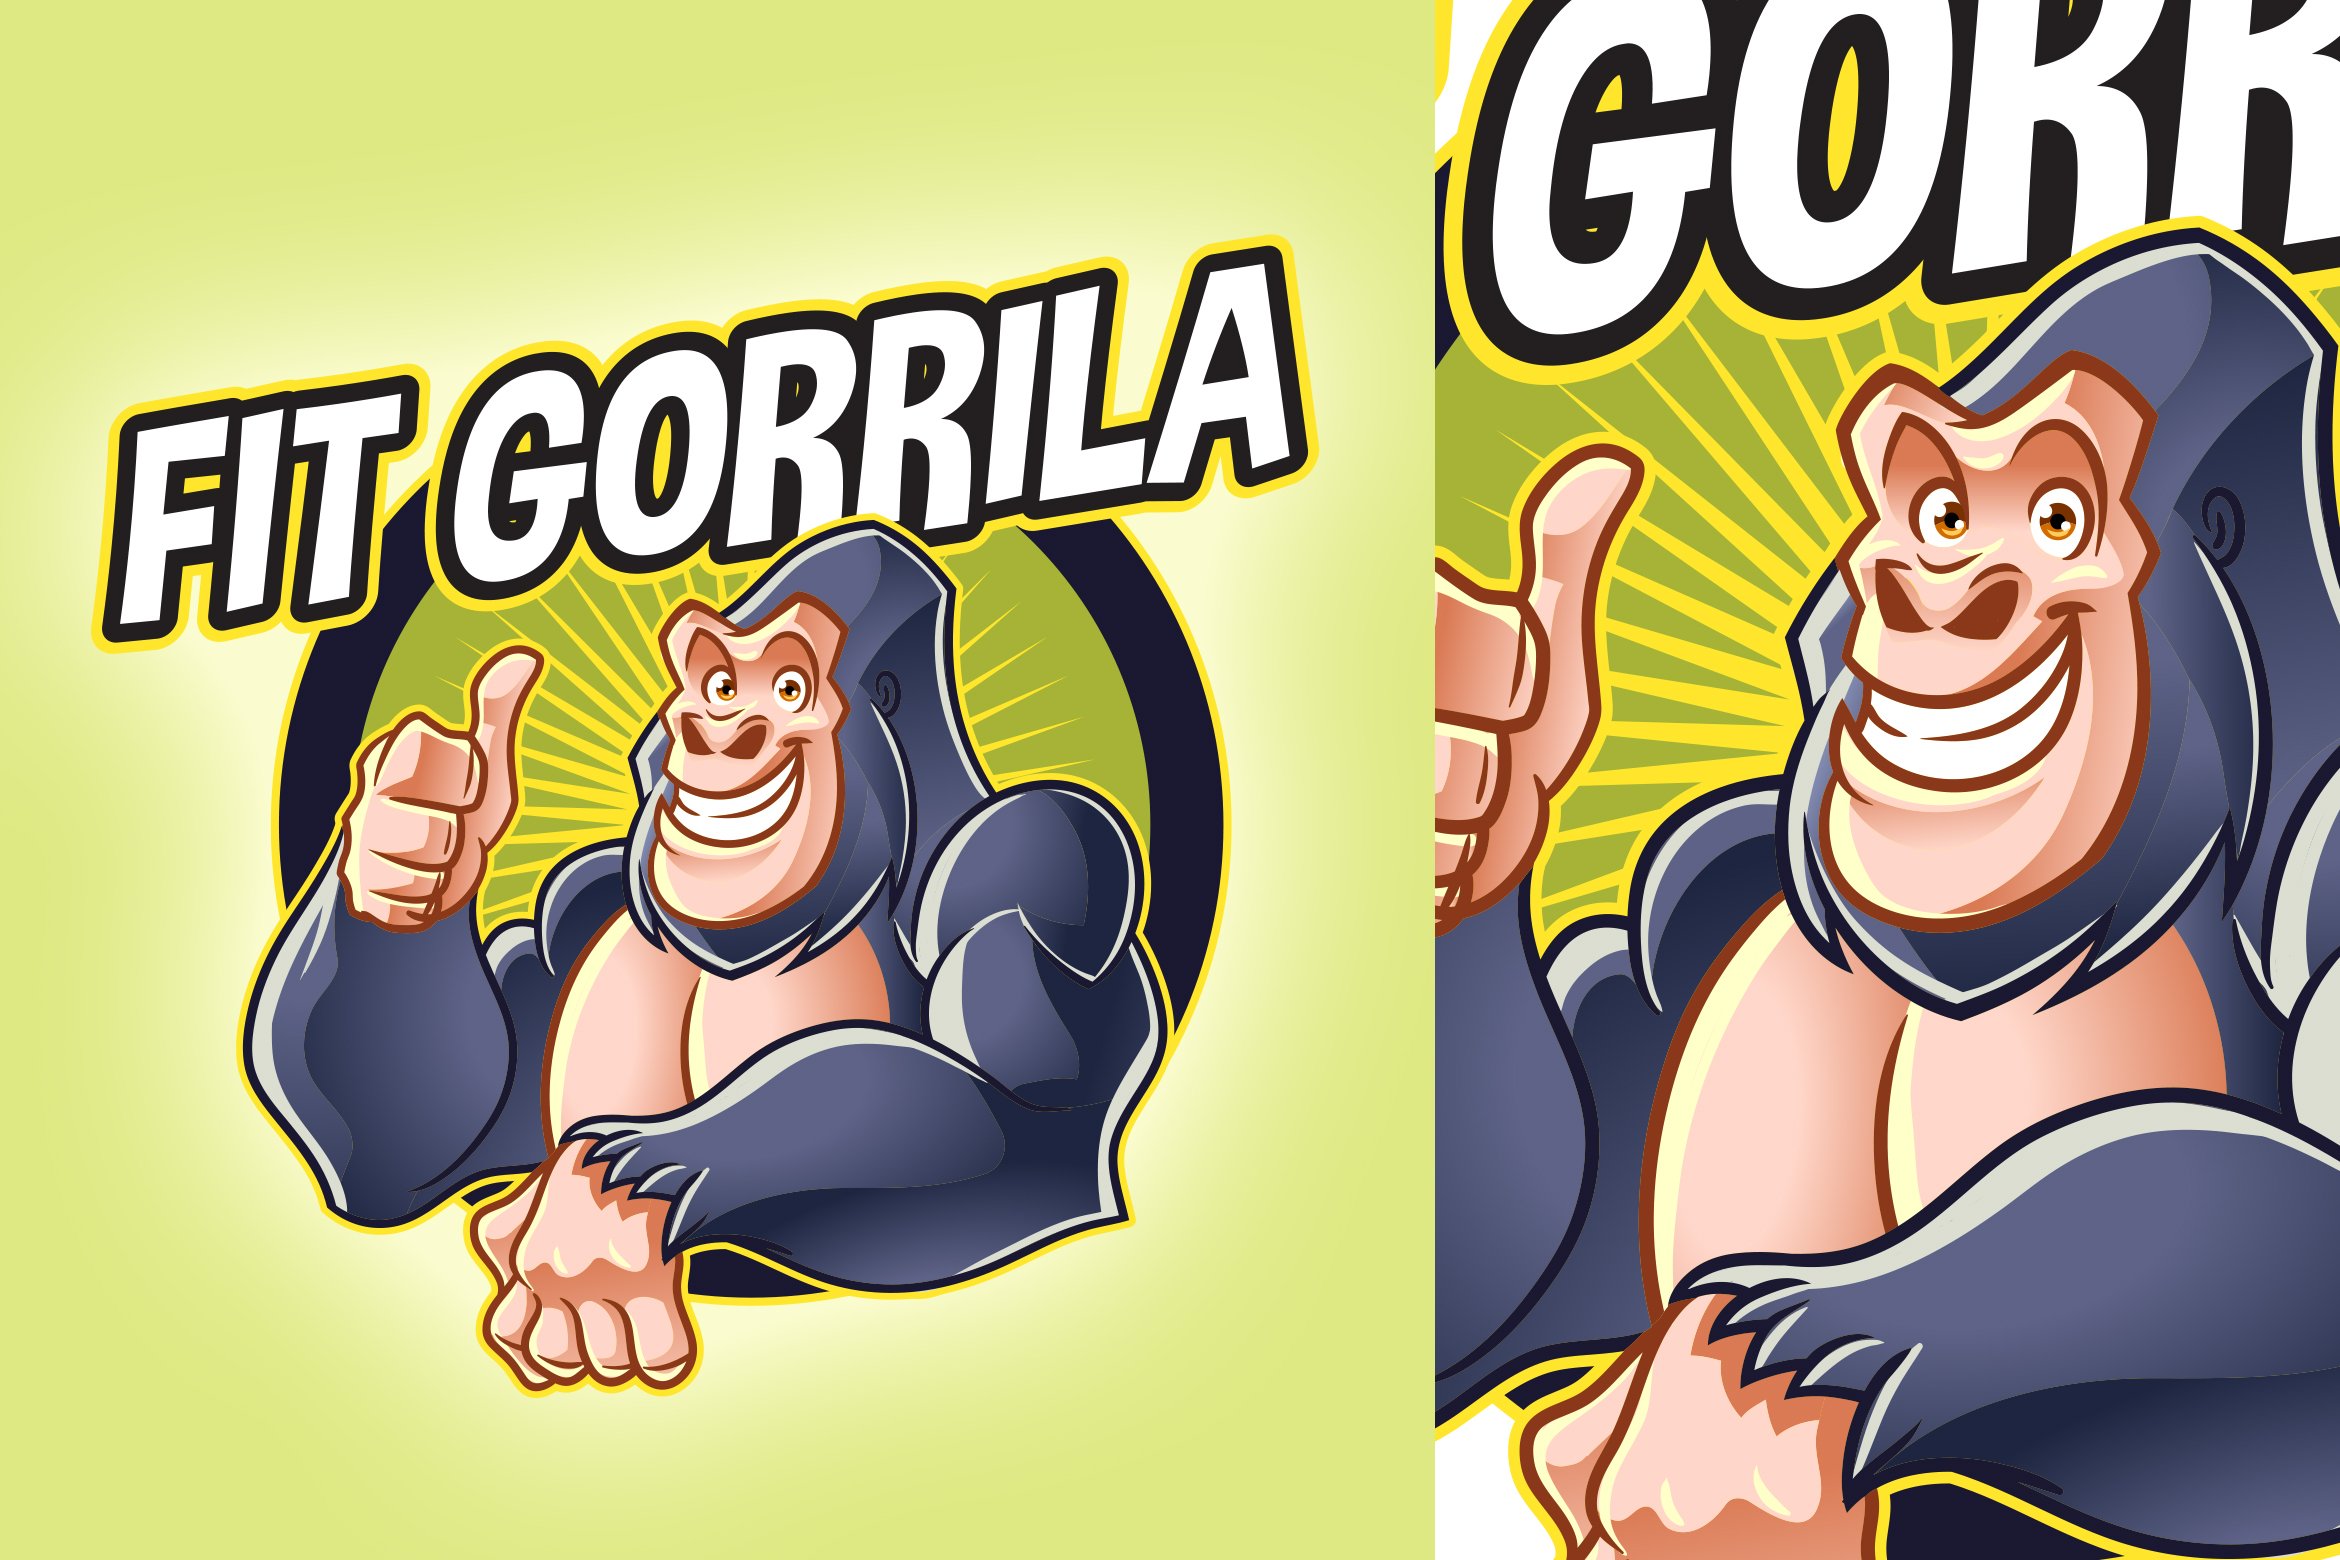 Cartoon Gorilla cover image.